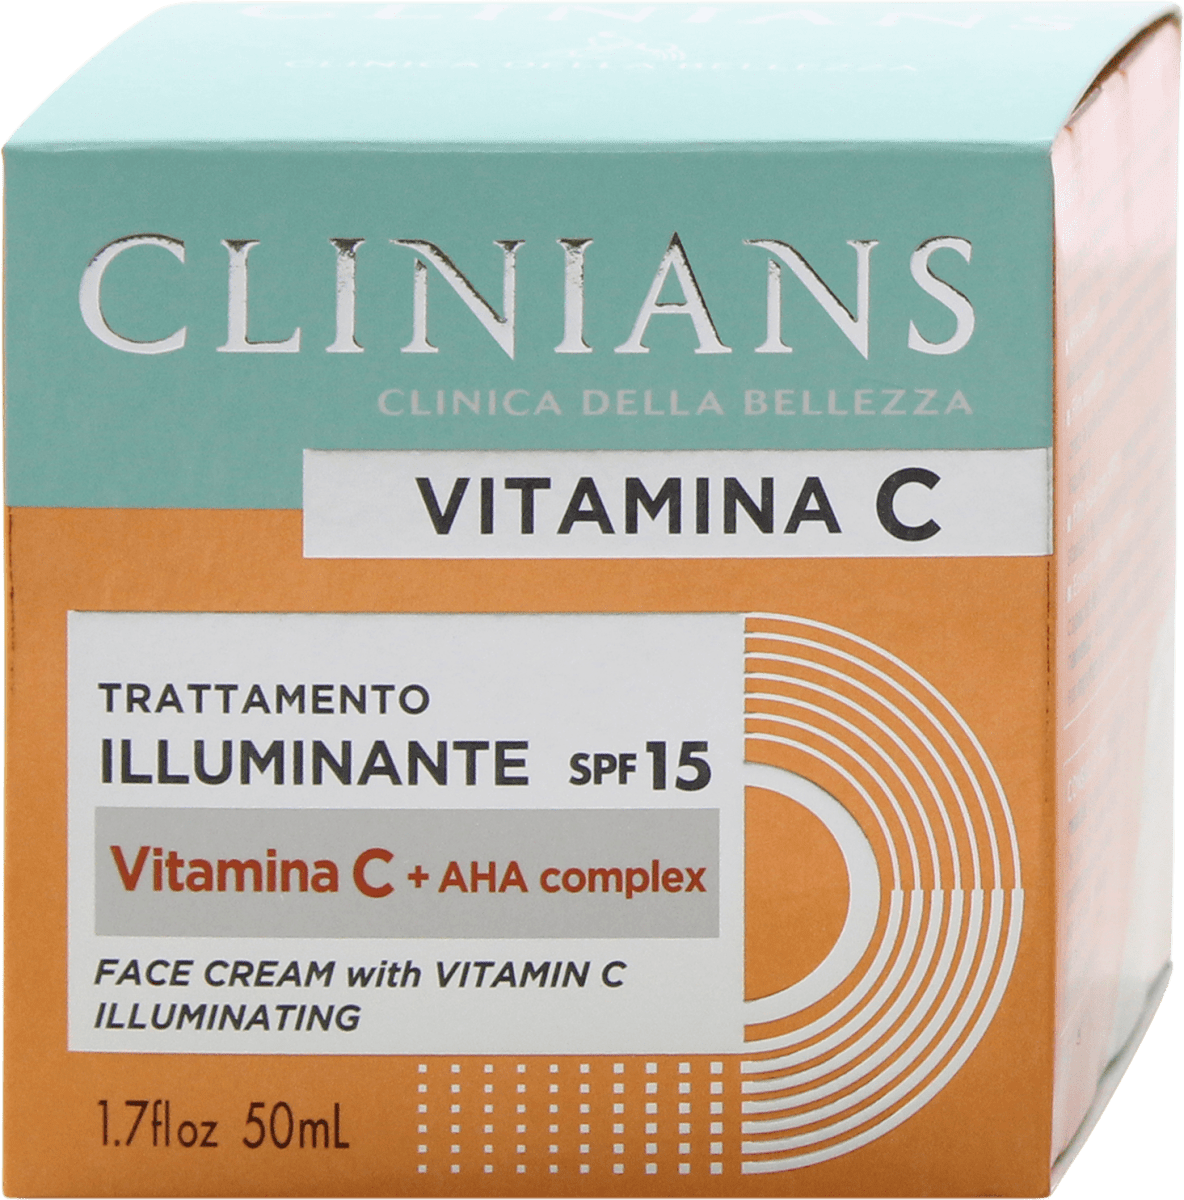 CLINIANS Crema viso illuminante Vitamina C SPF 15, 50 ml Acquisti online  sempre convenienti